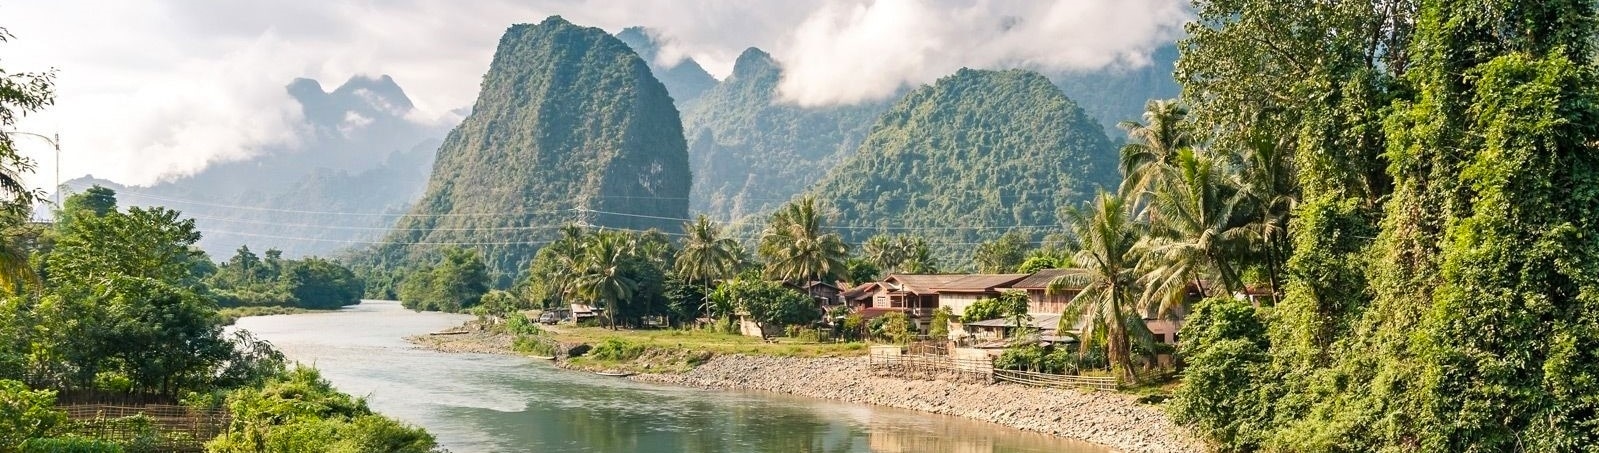 Voyage Laos luang prabang mekong